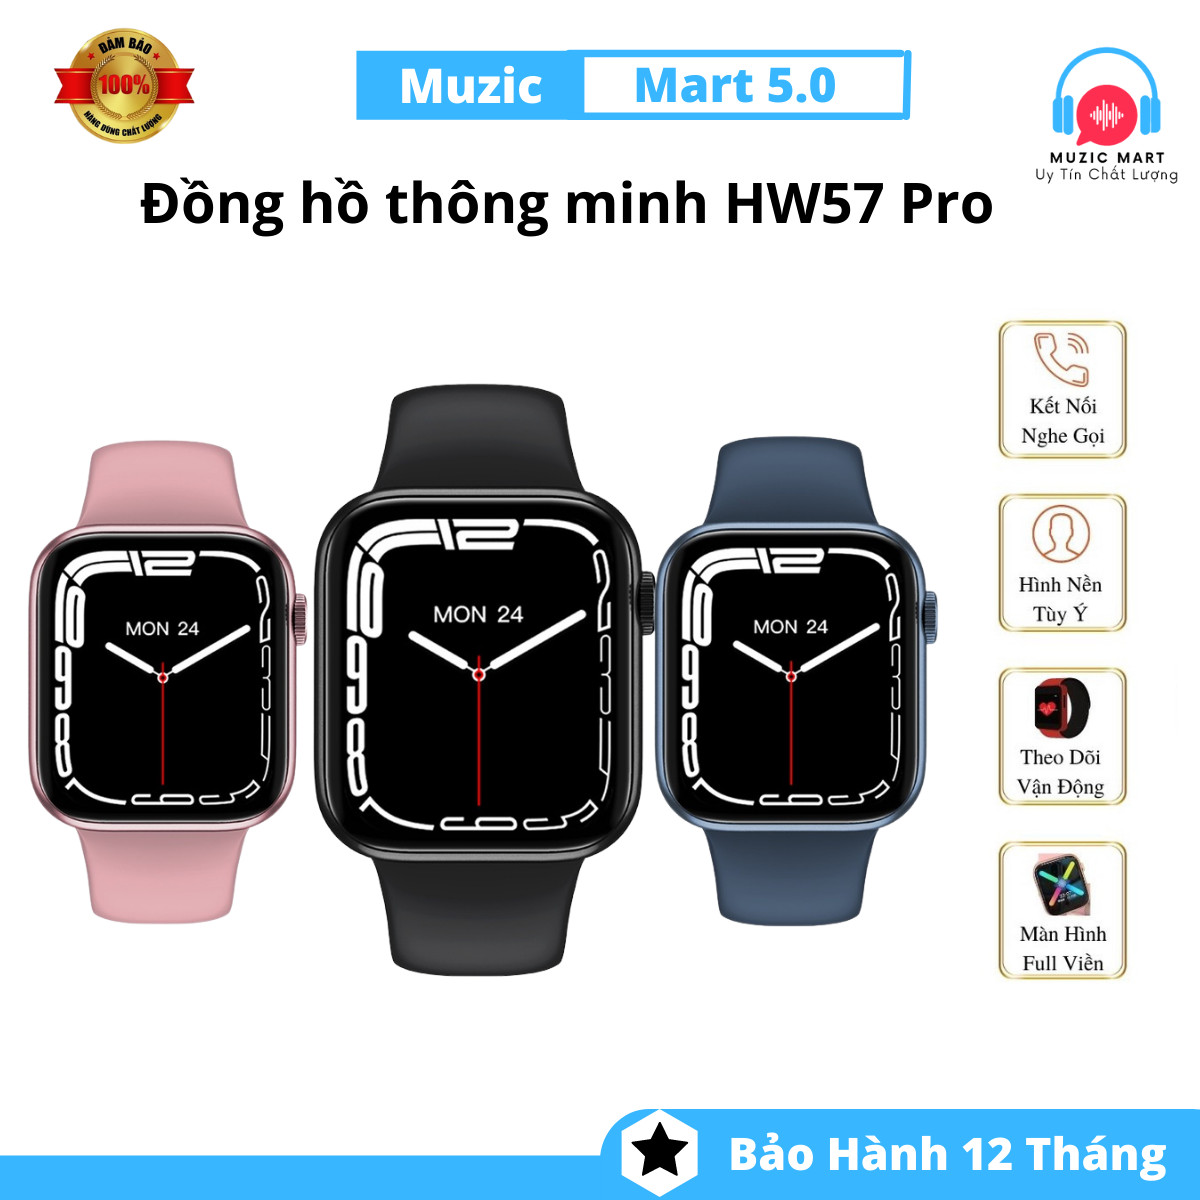 Đồng hồ thông minh HW57 Pro - Kết nối NFC, Bluetooth, màn hình cảm ứng vuông 1.77 inch - Có ngôn ngữ tiếng Việt - Công nghệ sạc không dây - Điều khiển qua ứng dụng Wearfit Pro - Chống thấm nước chuẩn IP68 - Gọi điện, đổi hình .